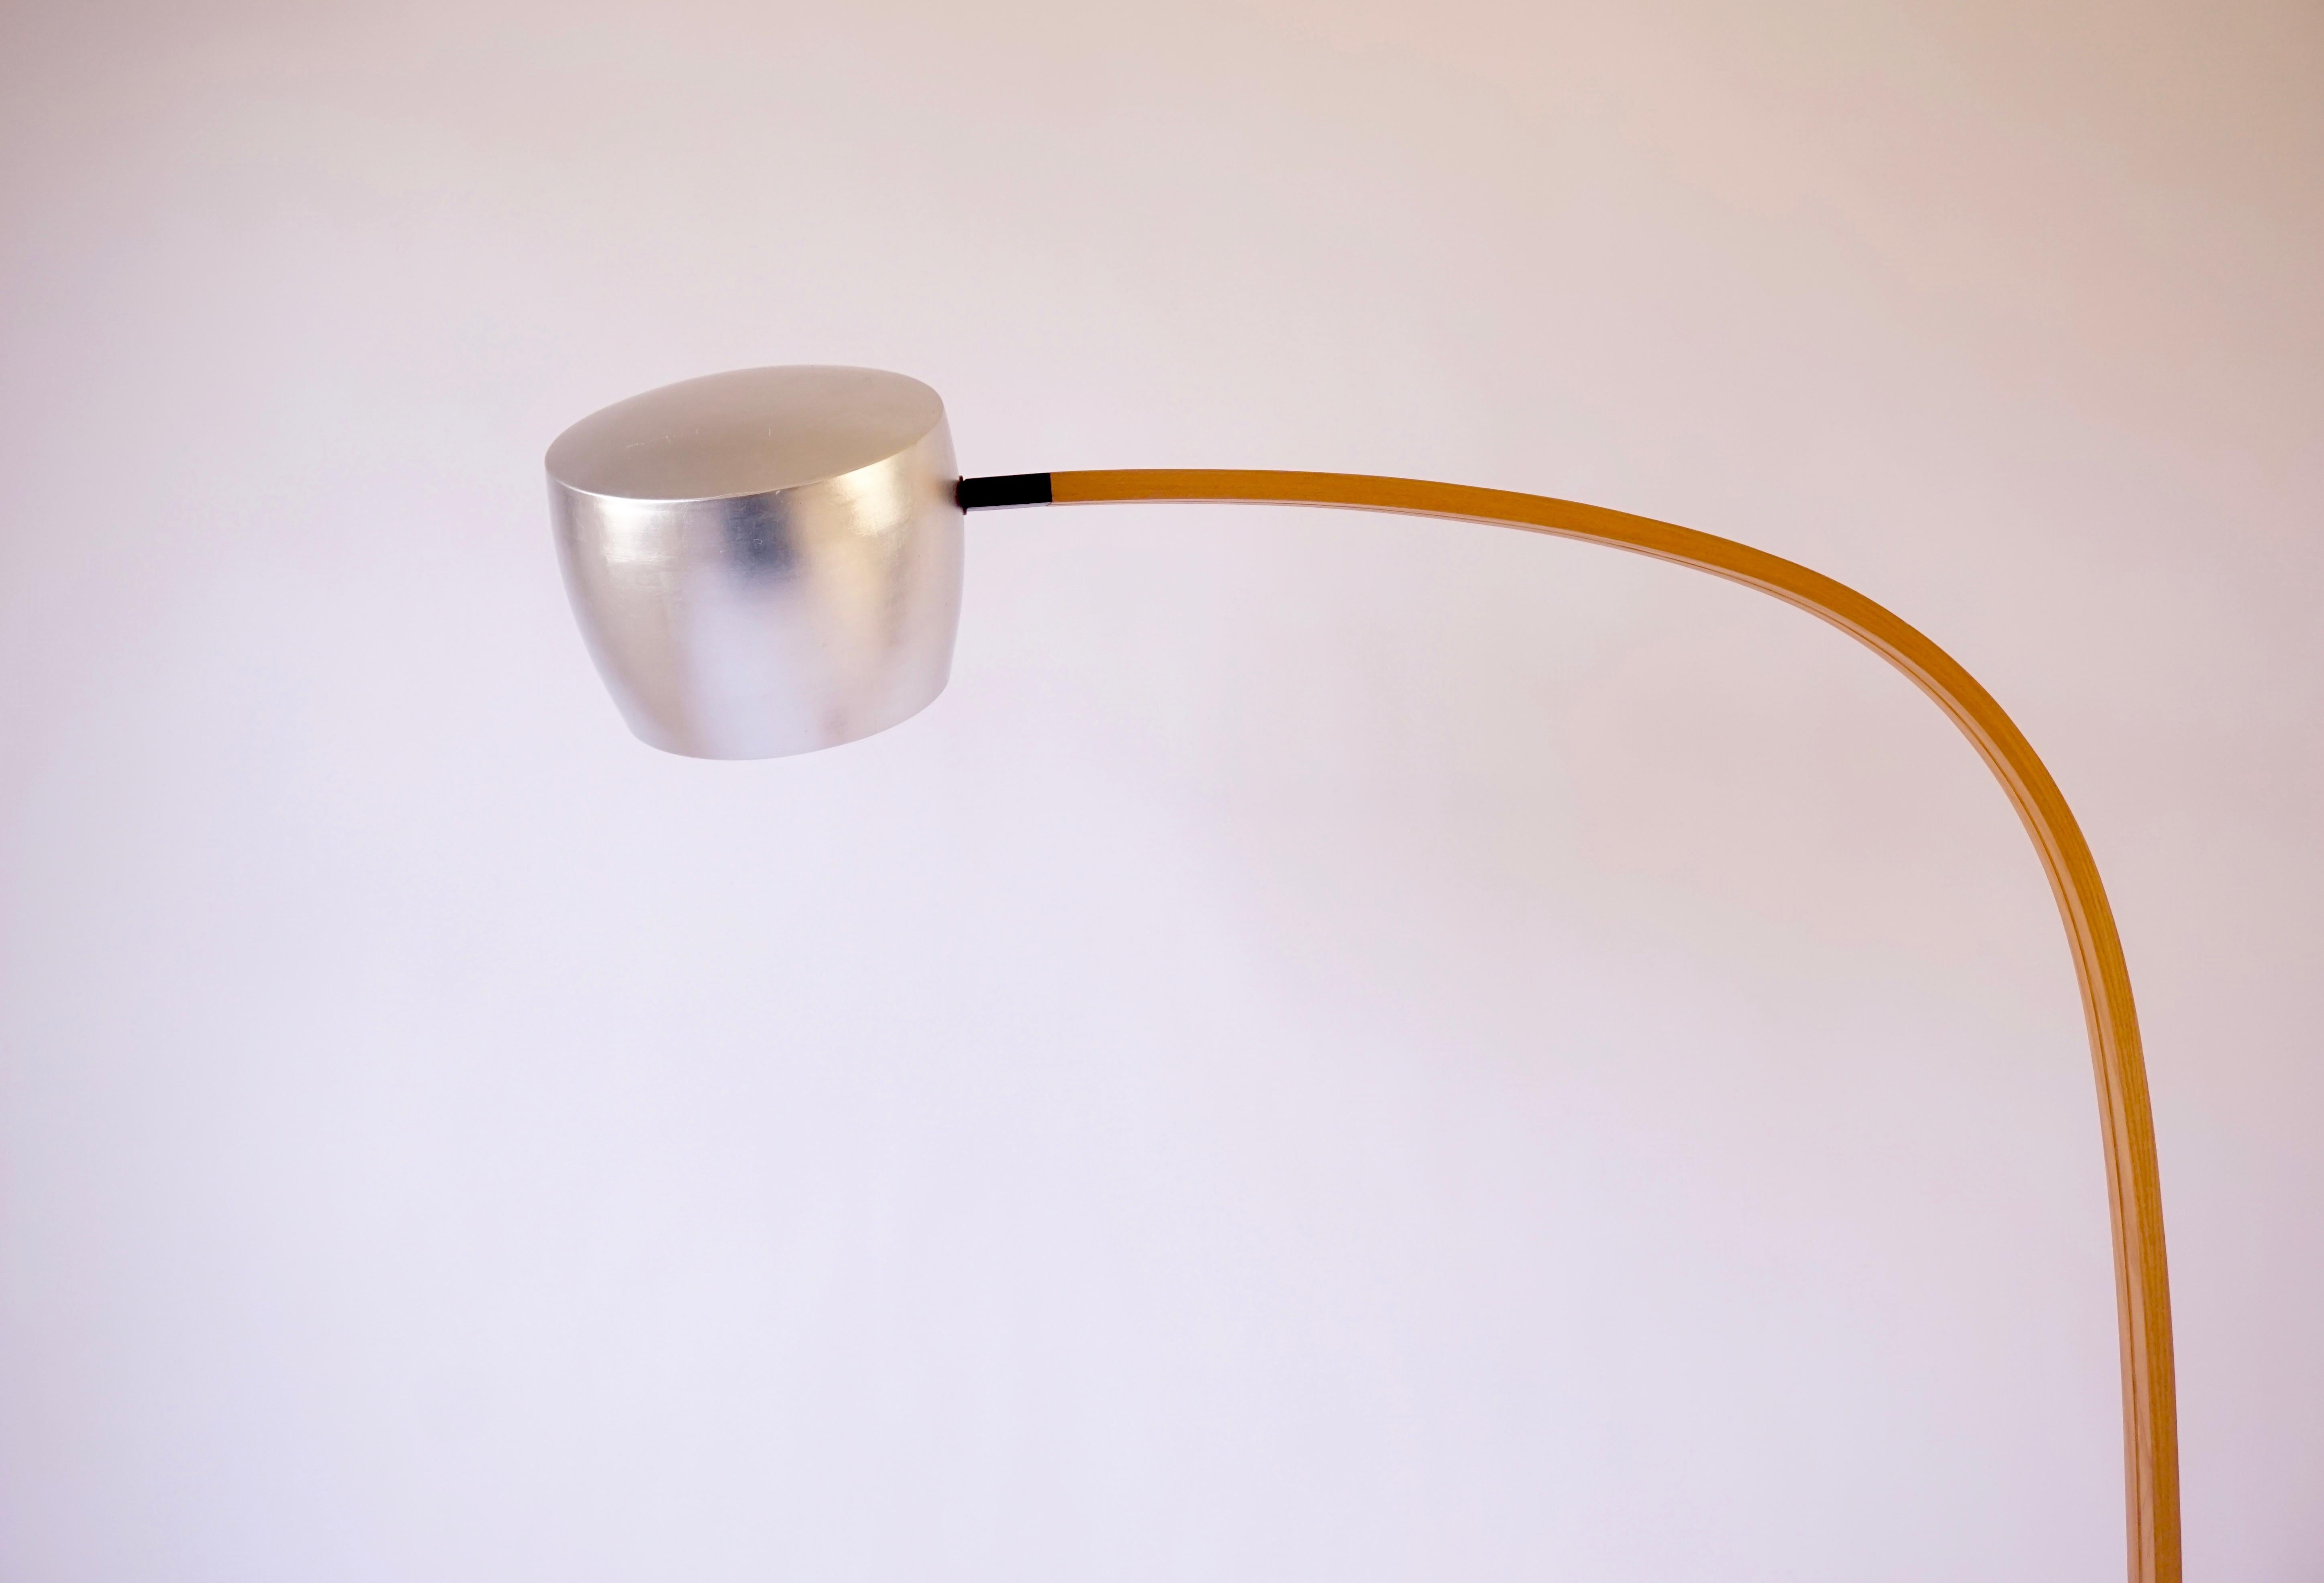 Le lampadaire spun est doté d'un abat-jour en aluminium filé à la main et recouvert d'une couche de poudre blanc os à l'intérieur et à l'extérieur. L'abat-jour est ensuite doré avec une feuille d'aluminium de couleur argentée sur l'extérieur de